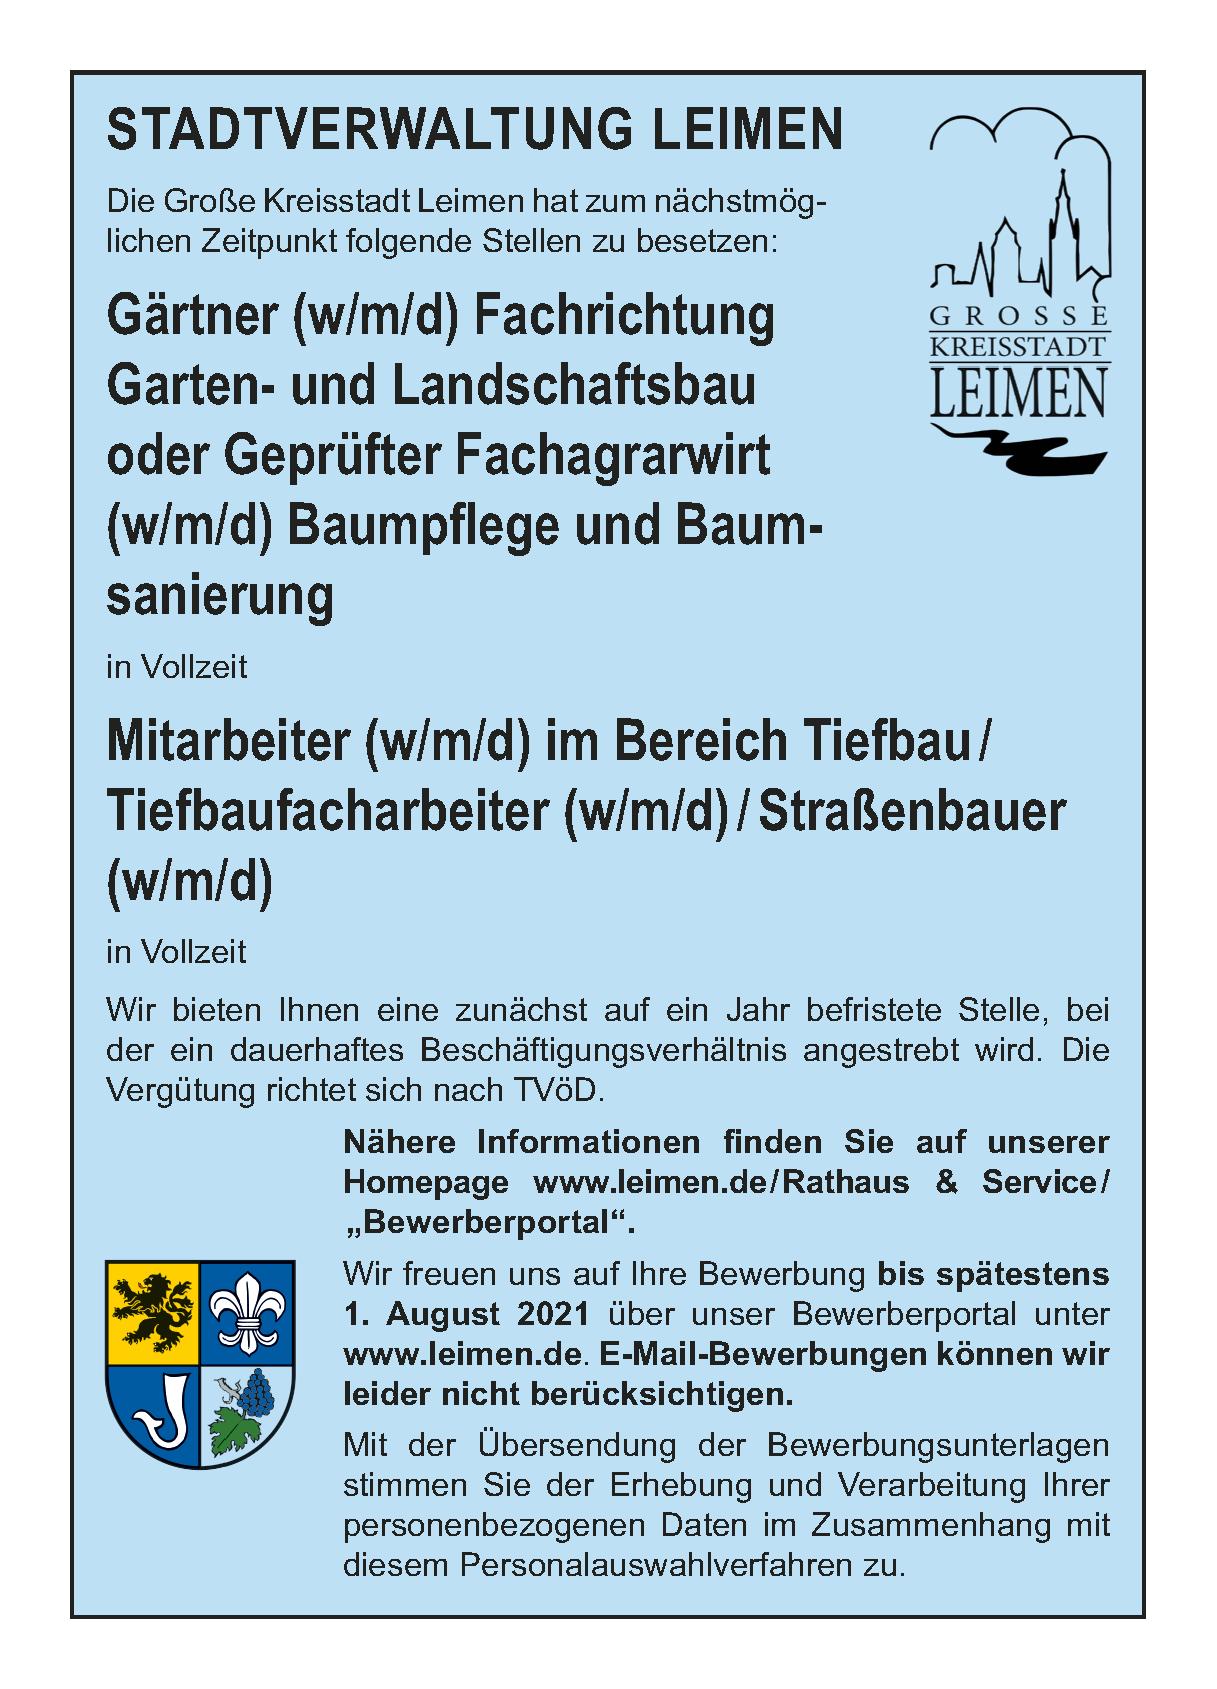  Gärtner (w/m/d) Fachrichtung Garten- Landschaftsbau od. geprüfter Fachagrawirt (w/m/d) und Mitarbeiter im Bereich Tiefbau (w/m/d) 